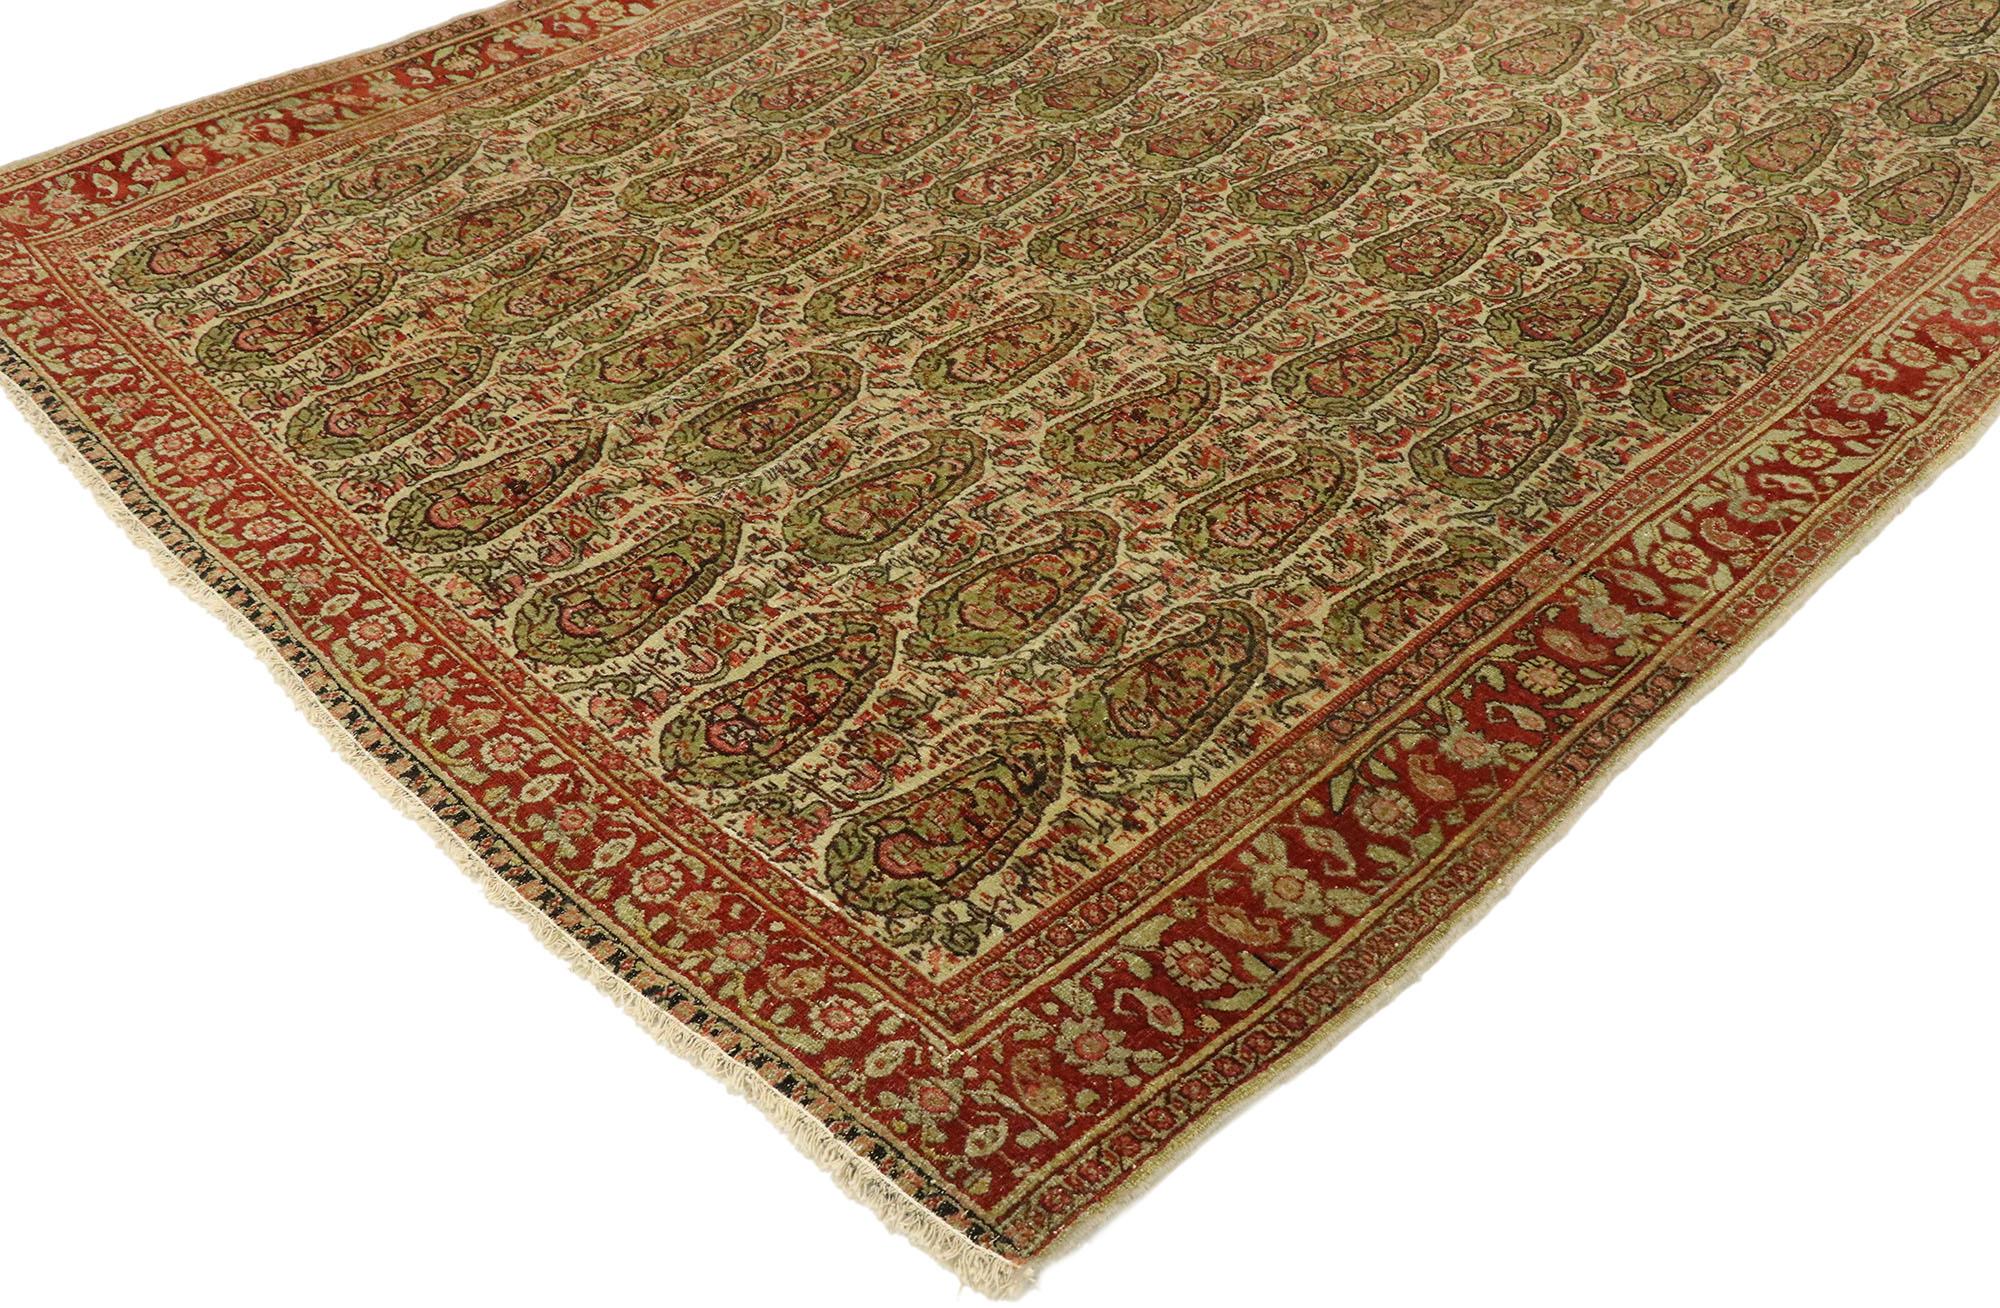 53088 Gealterter persischer Senneh-Teppich im rustikalen Arts & Crafts-Stil. Mit rustikalem Charme und zeitloser Anziehungskraft in einer von der Erde inspirierten Farbgebung kann dieser handgeknüpfte Senneh aus alter persischer Wolle mit seinem